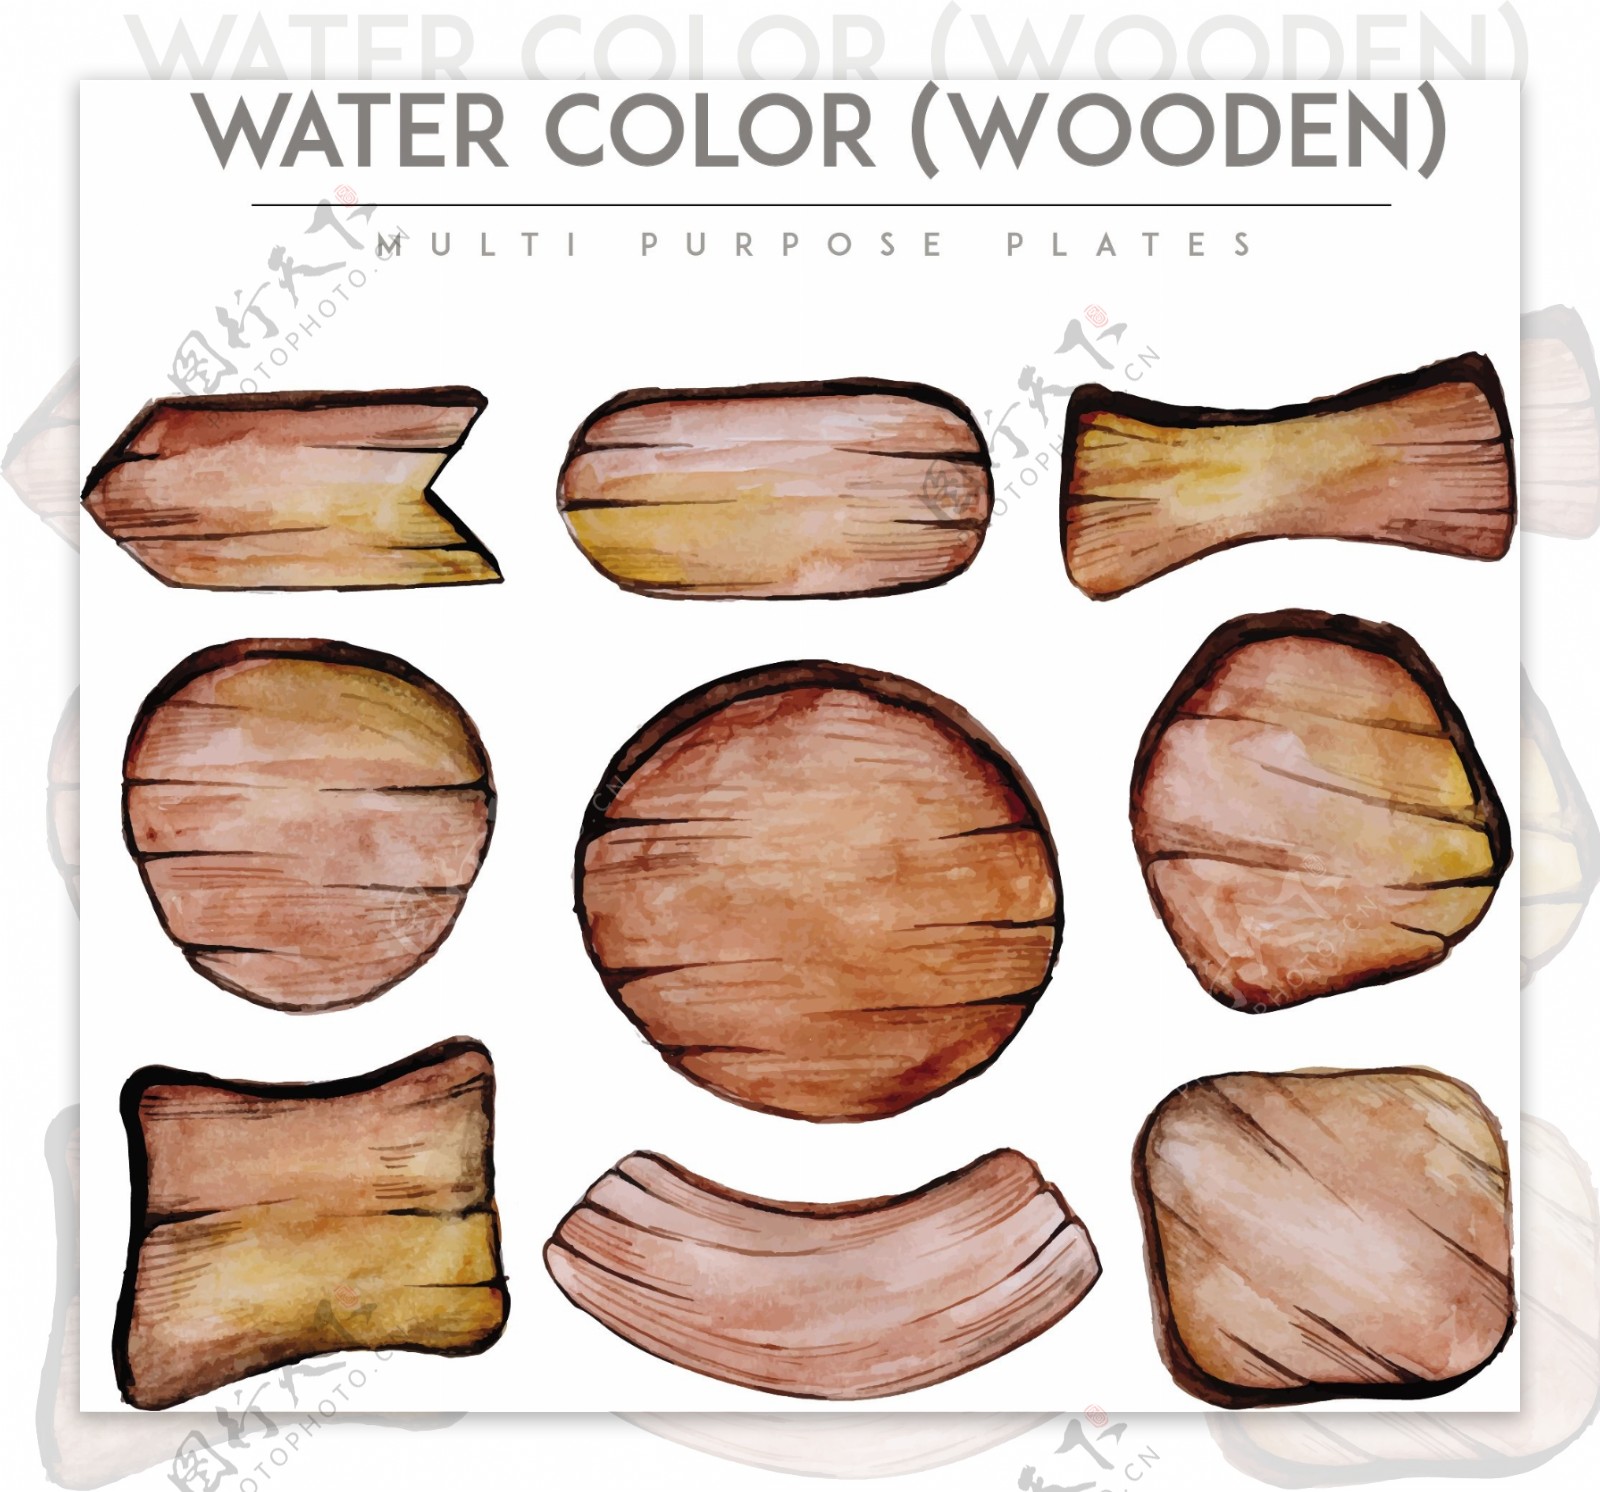 水彩效果风格木材标牌集合